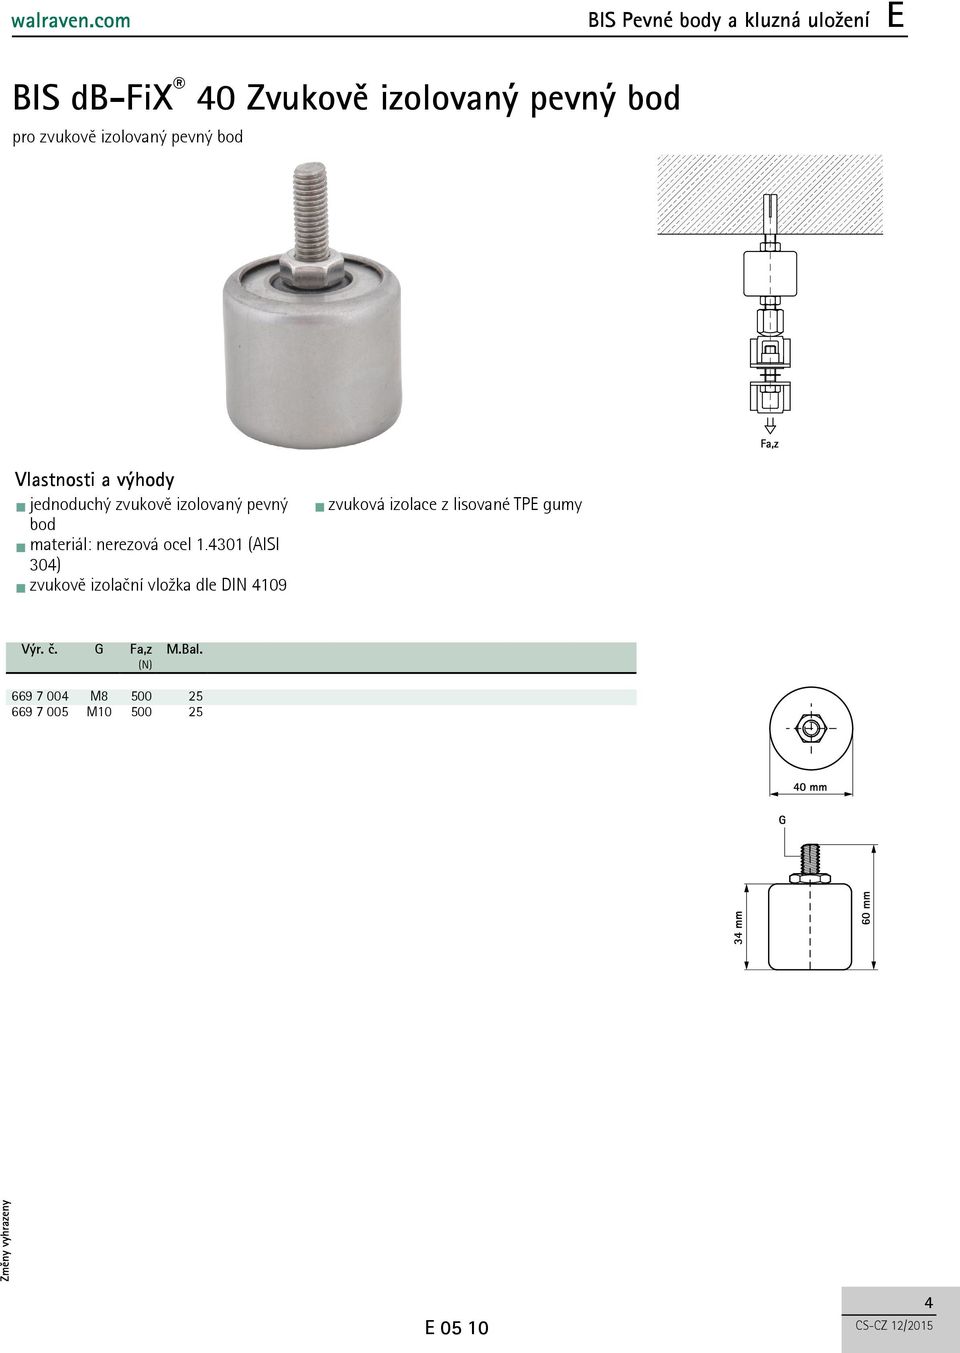 ocel.430 (AISI 304) zvukově izolační vložka dle DIN 409 zvuková izolace z lisované